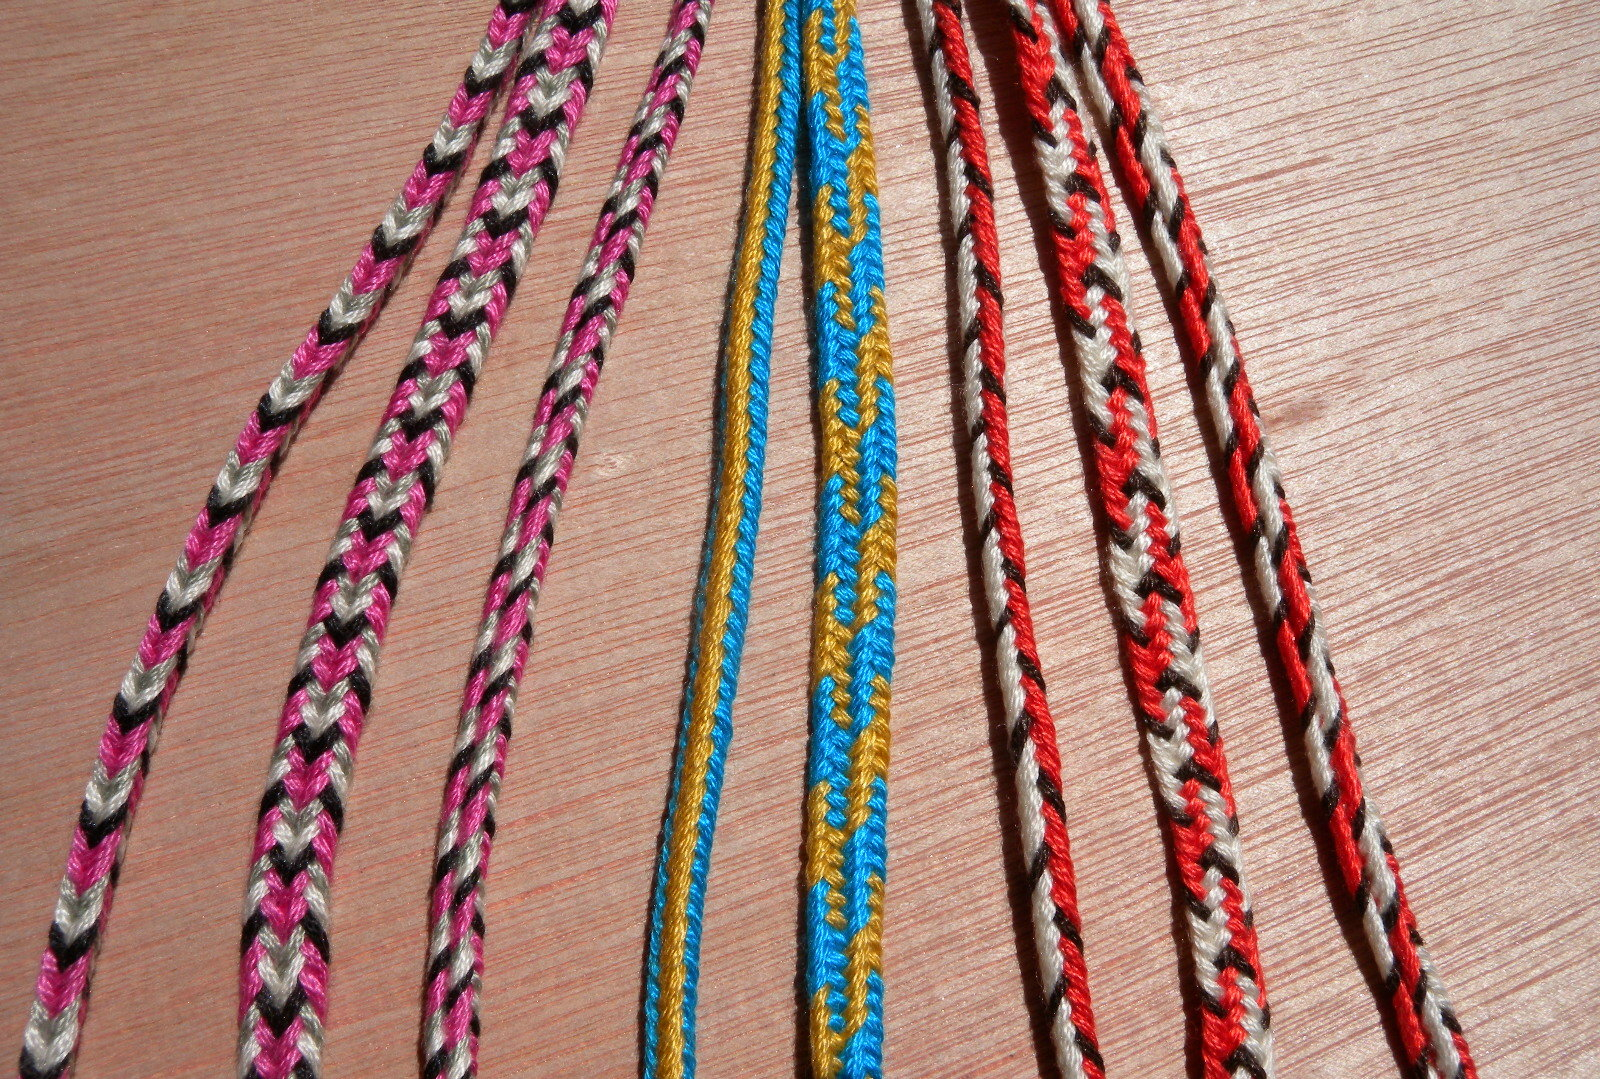 Bracelet Patterns With Embroidery Floss Start Here 5 Loop Braids Loop Braiding